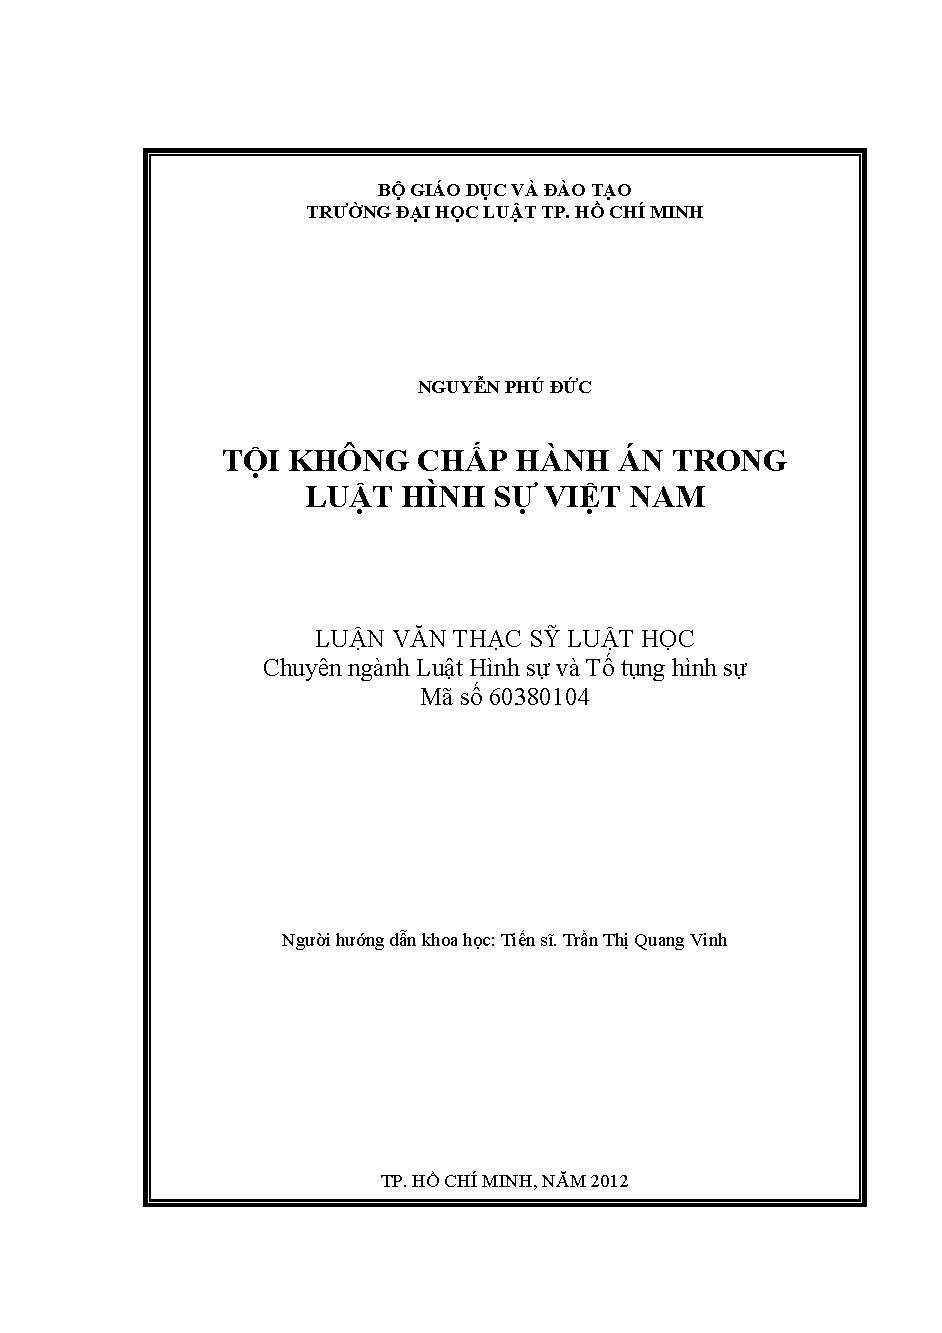 Tội không chấp hành án trong luật hình sự Việt Nam